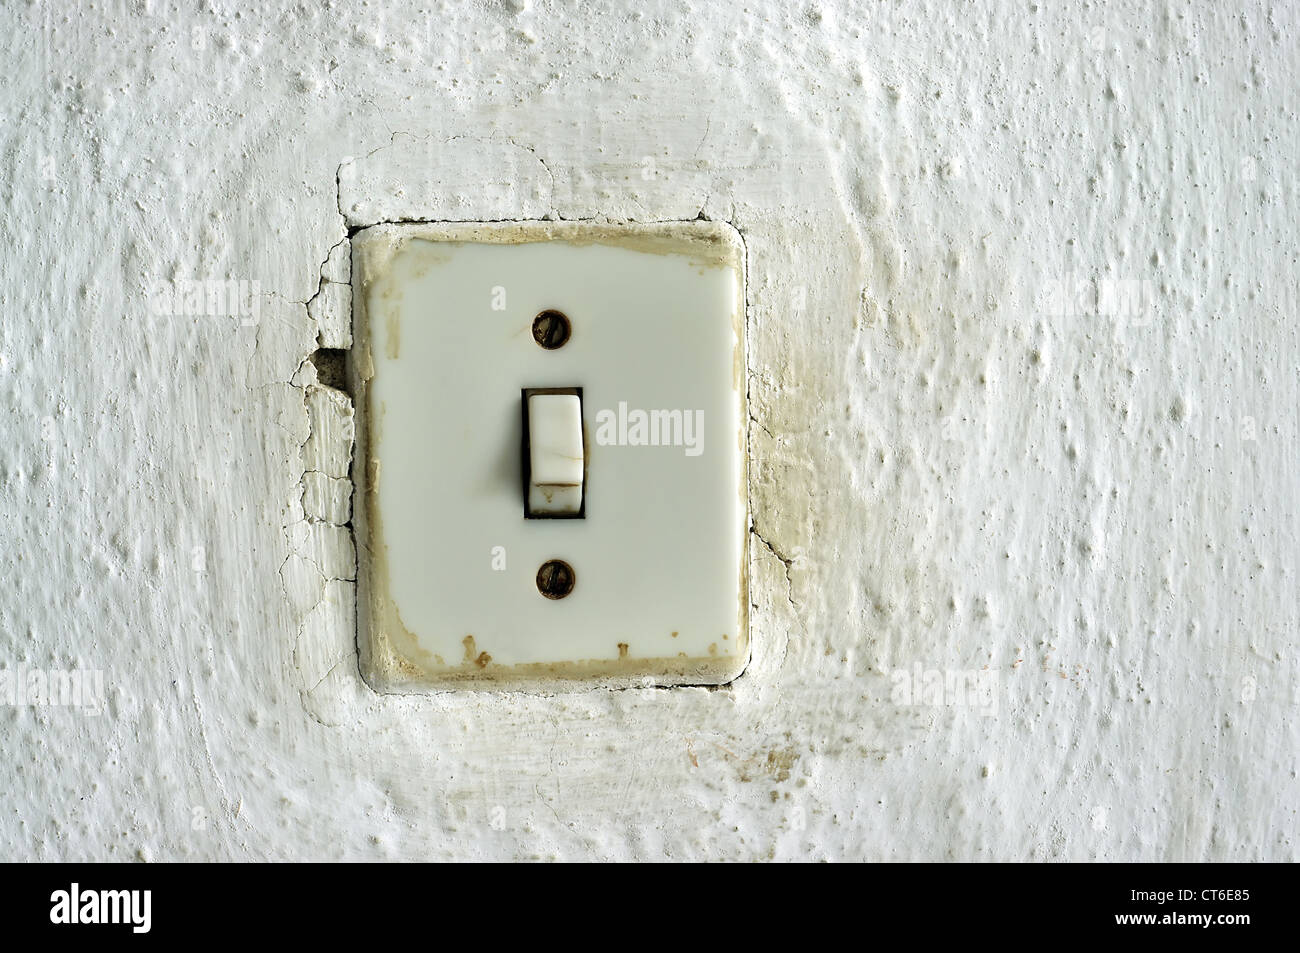 Interruptor de luz en la pared